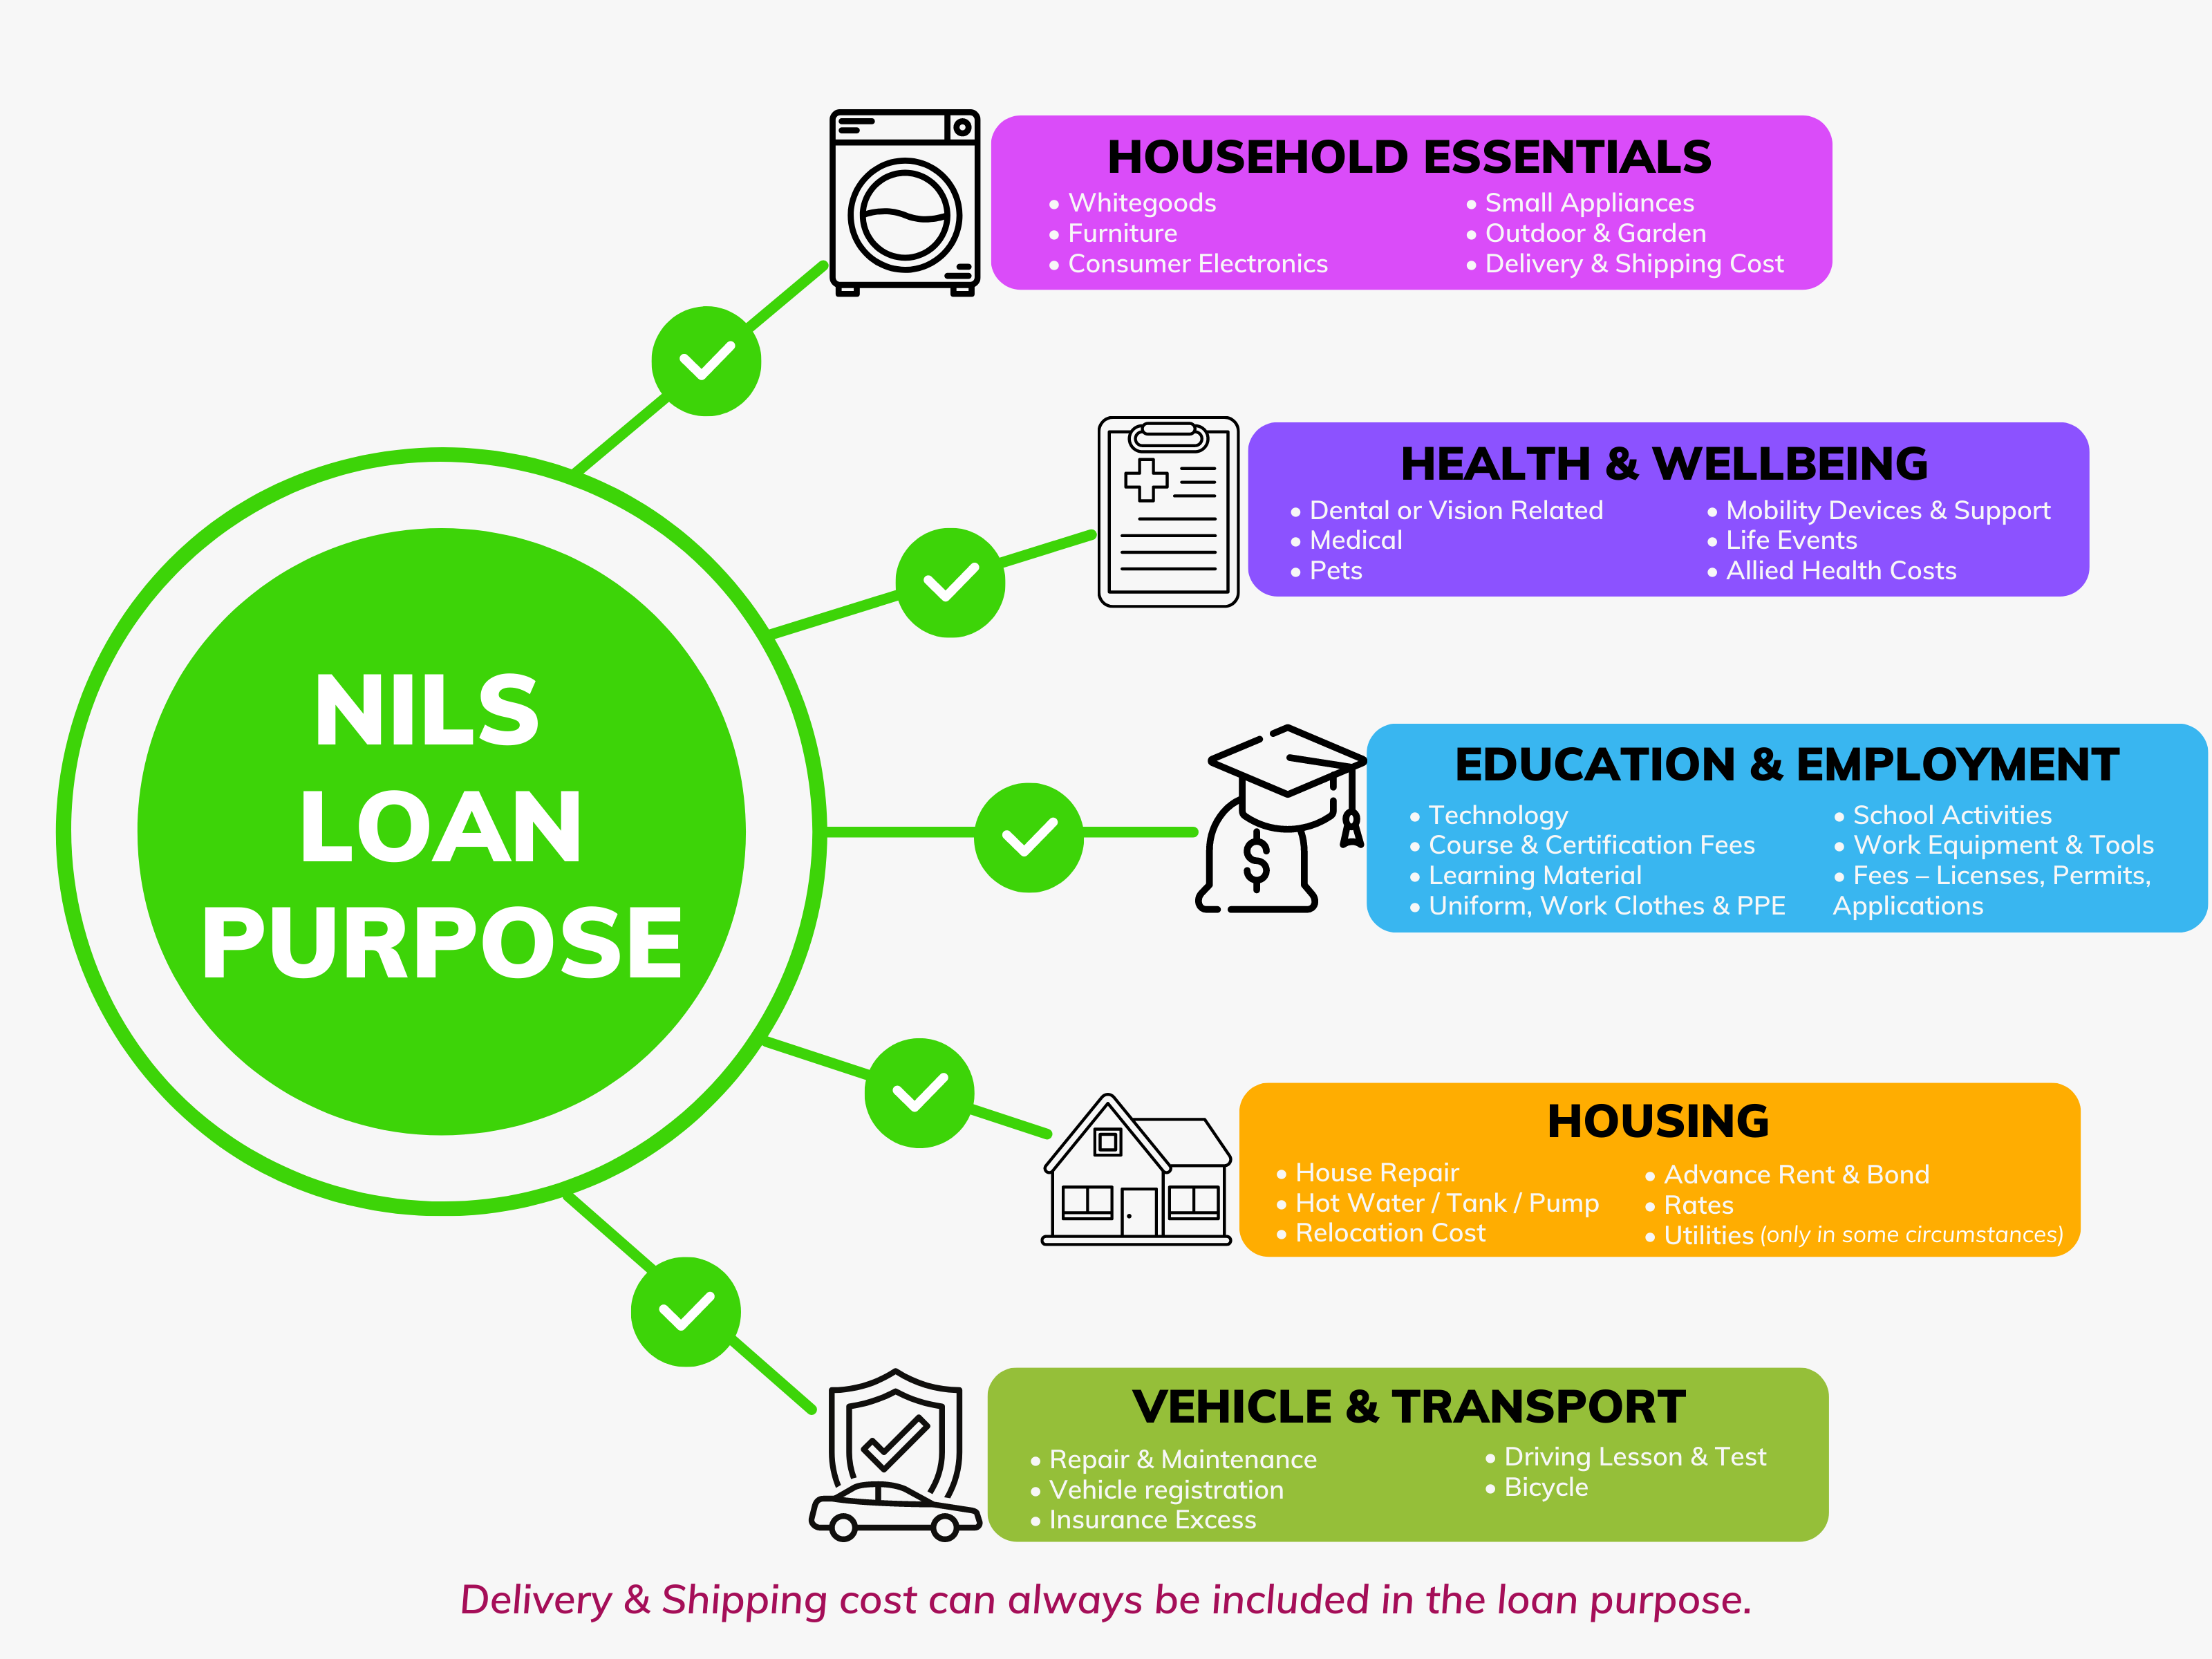 NILS loan purposes image